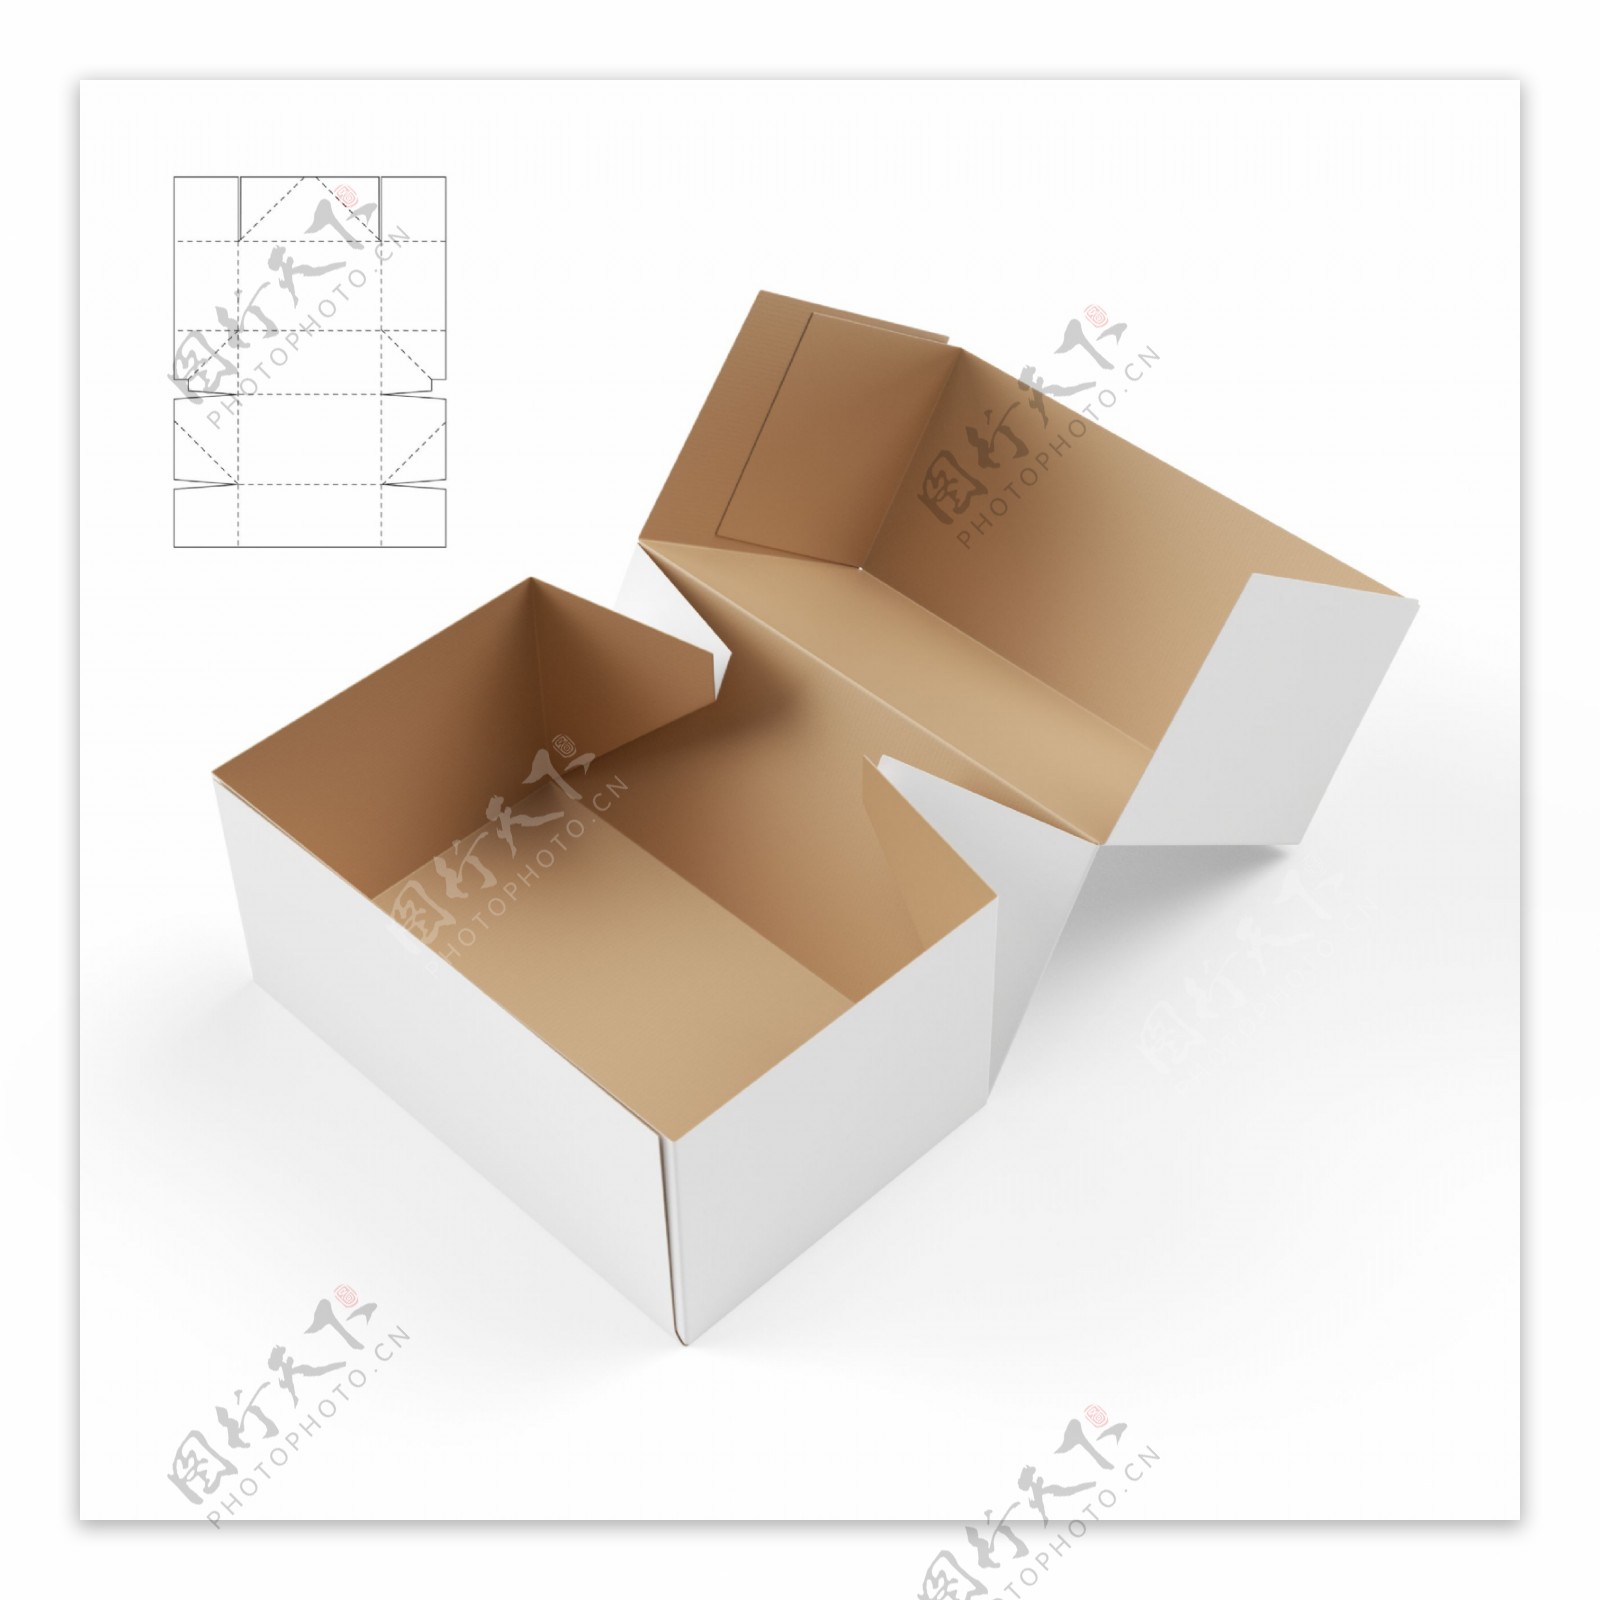 纸盒效果图与展开图